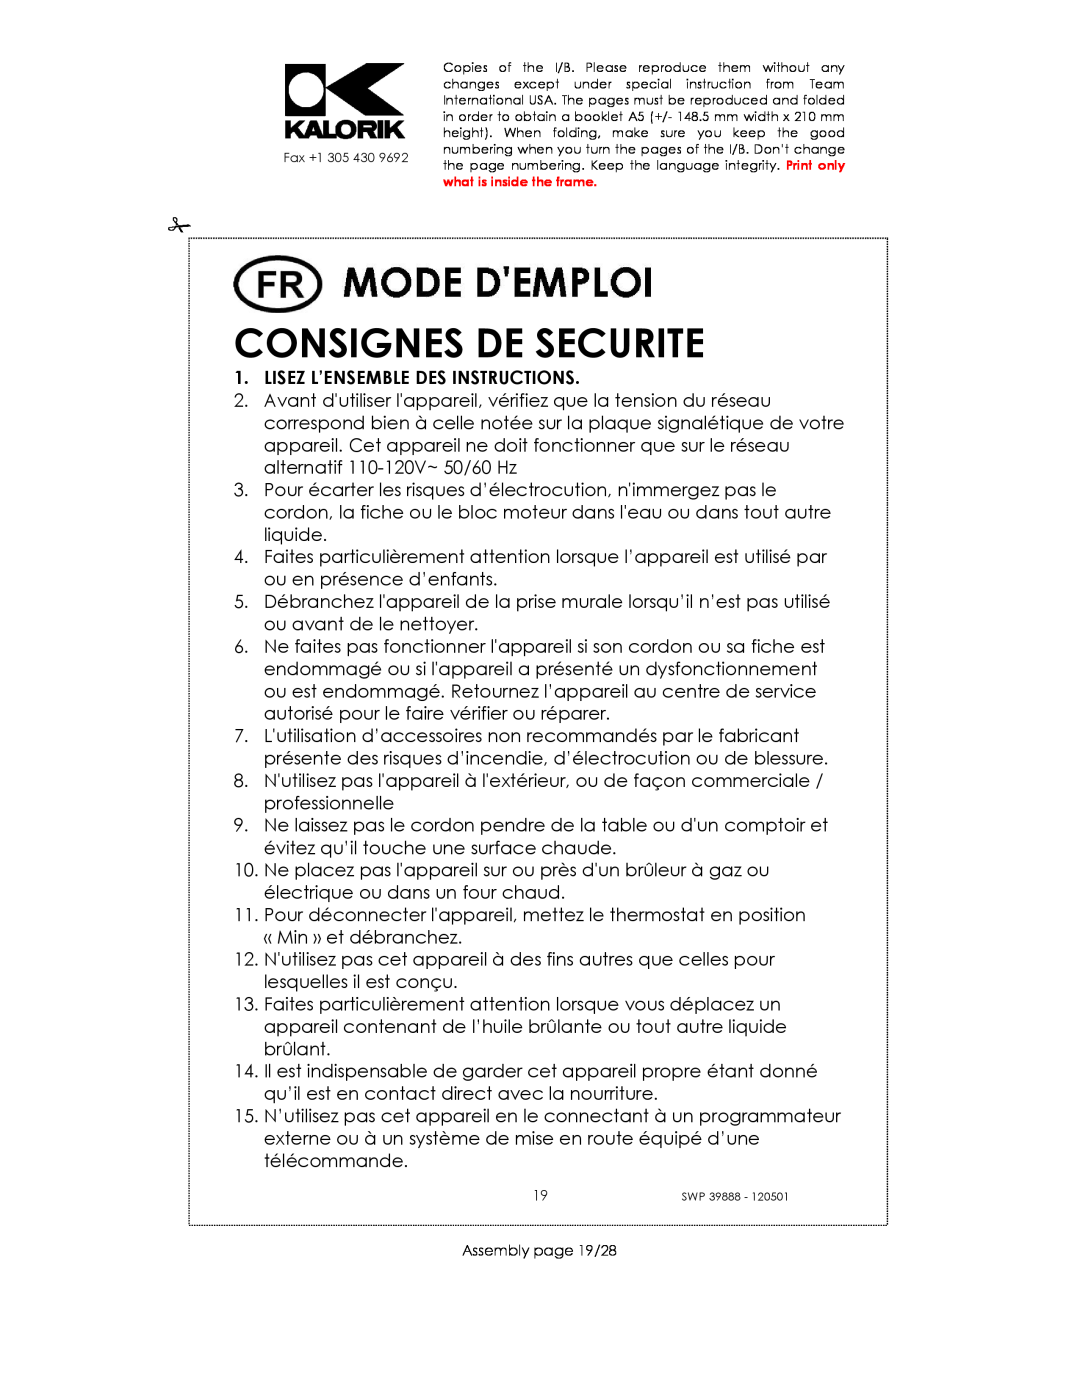 Kalorik SWP 39888 manual Consignes De Securite, Lisez L’Ensemble Des Instructions 